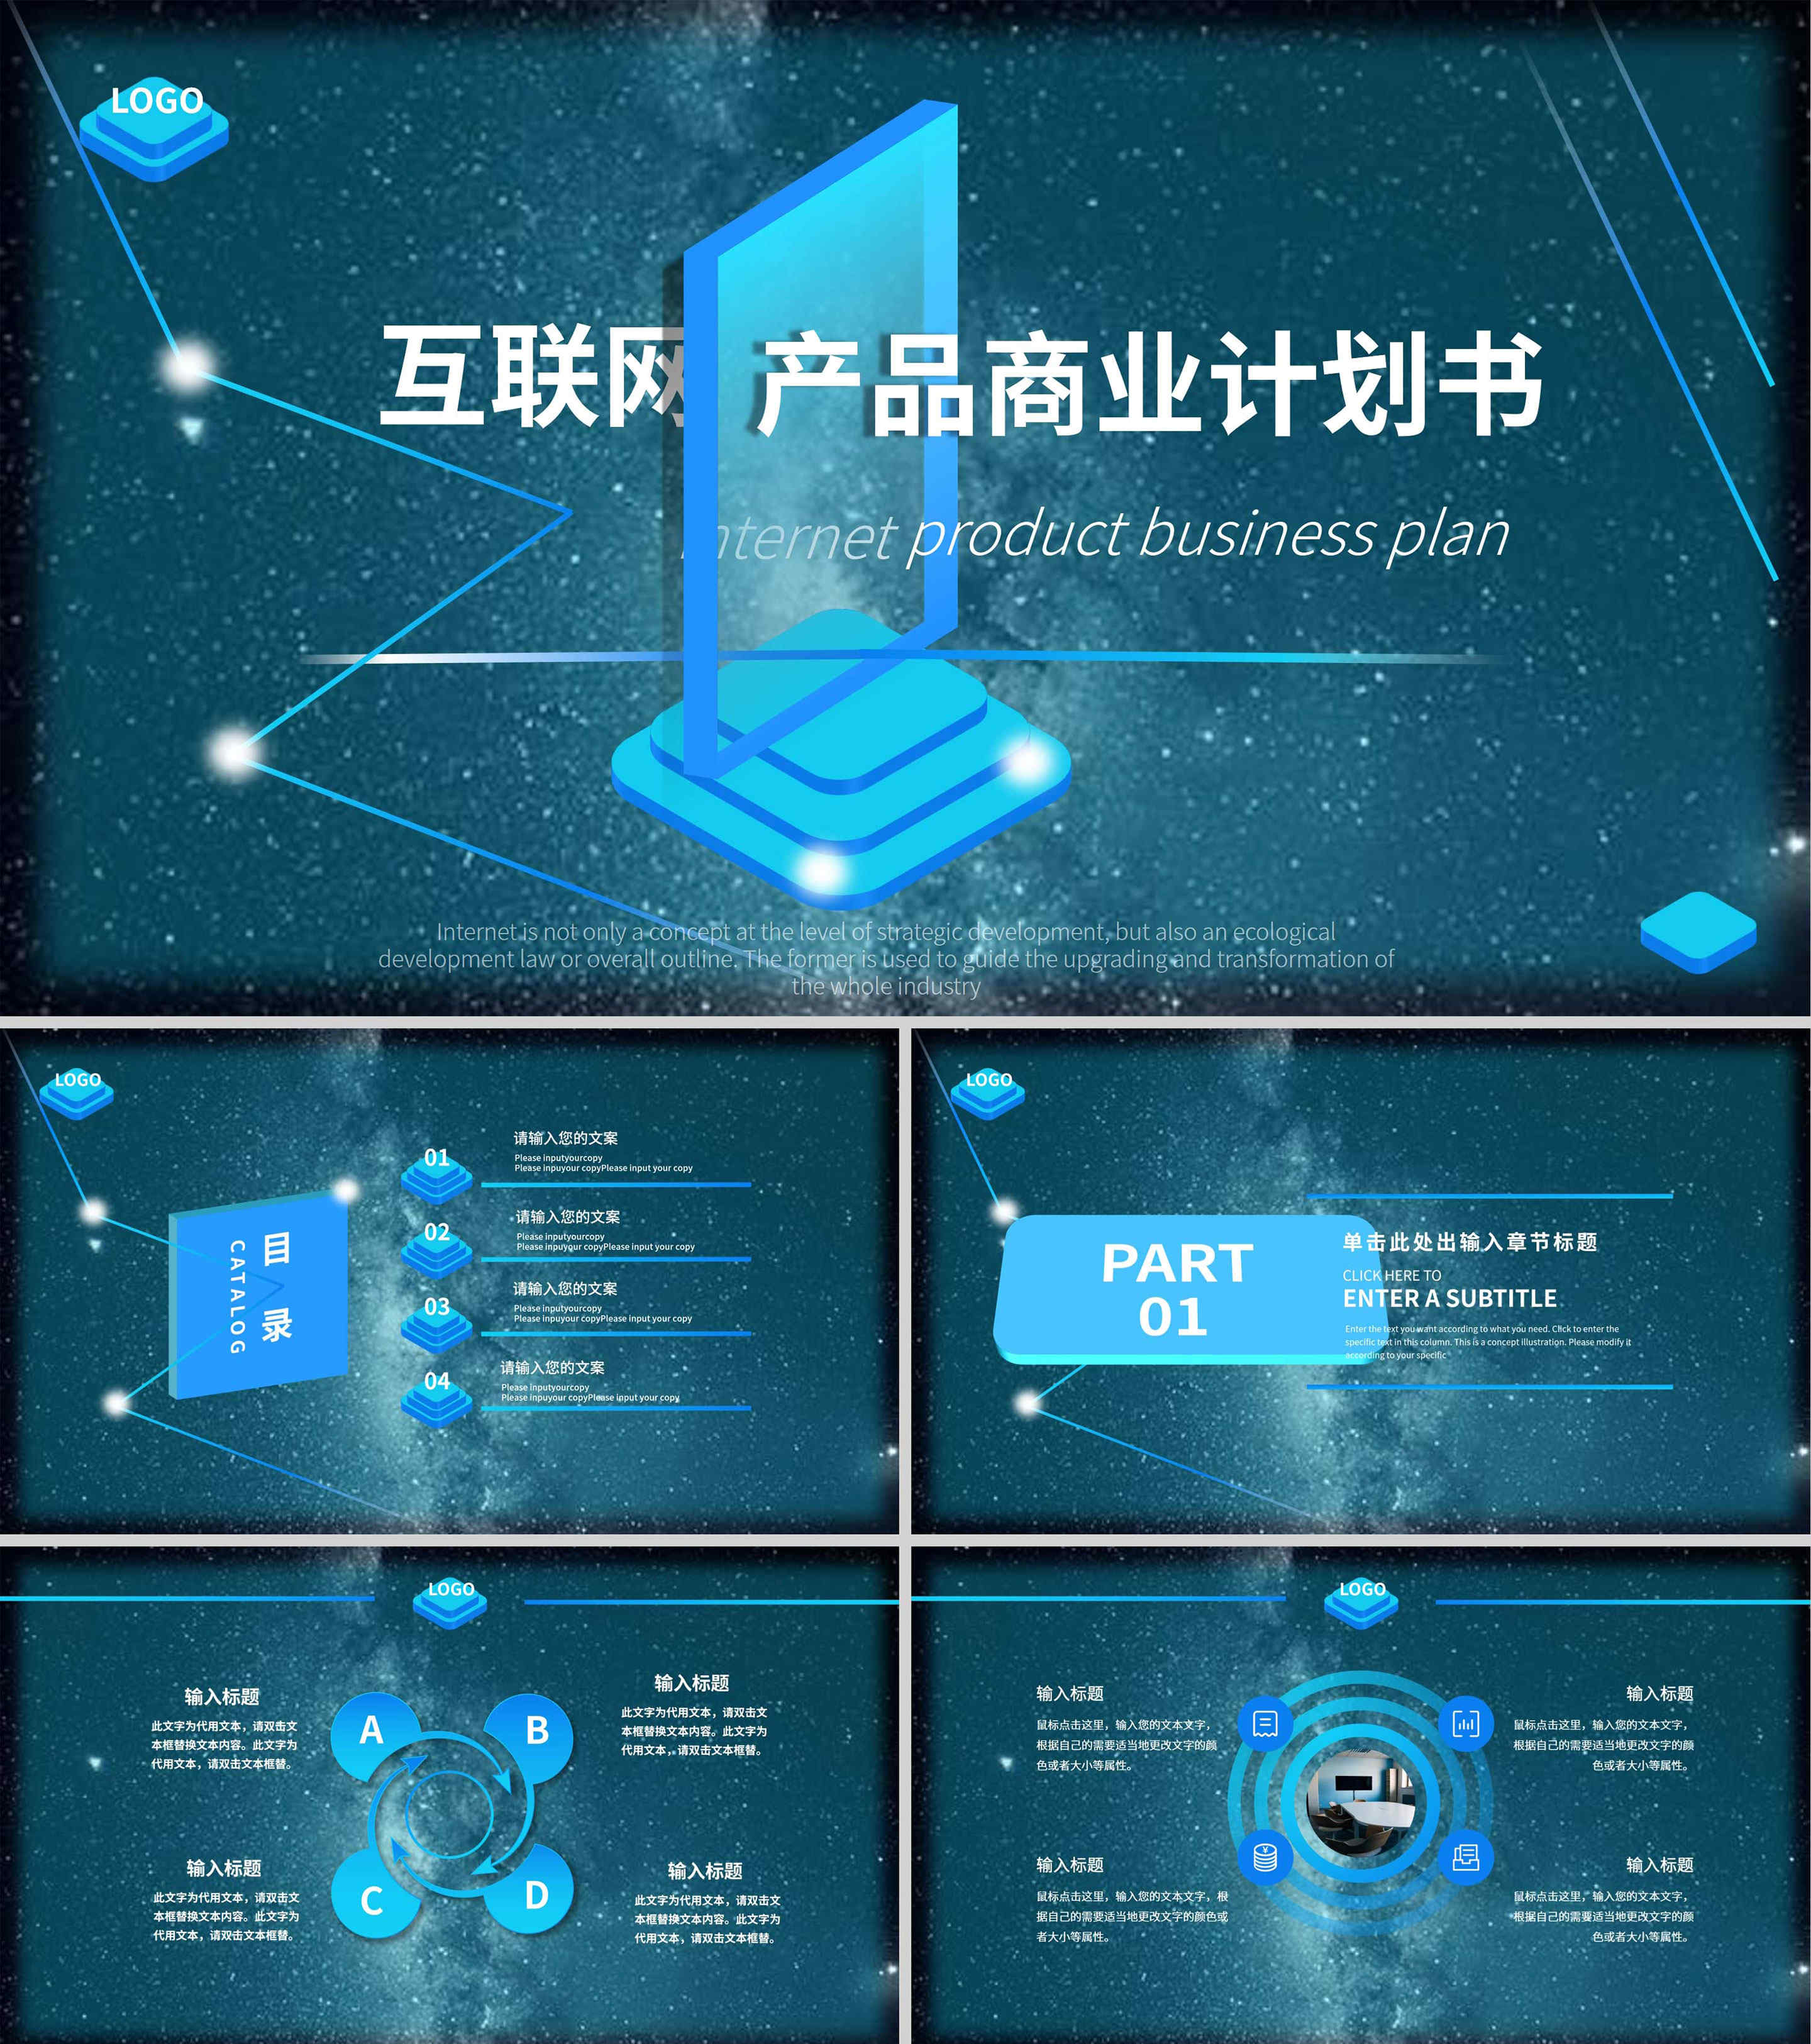 蓝色科技产品商业计划PPT模板